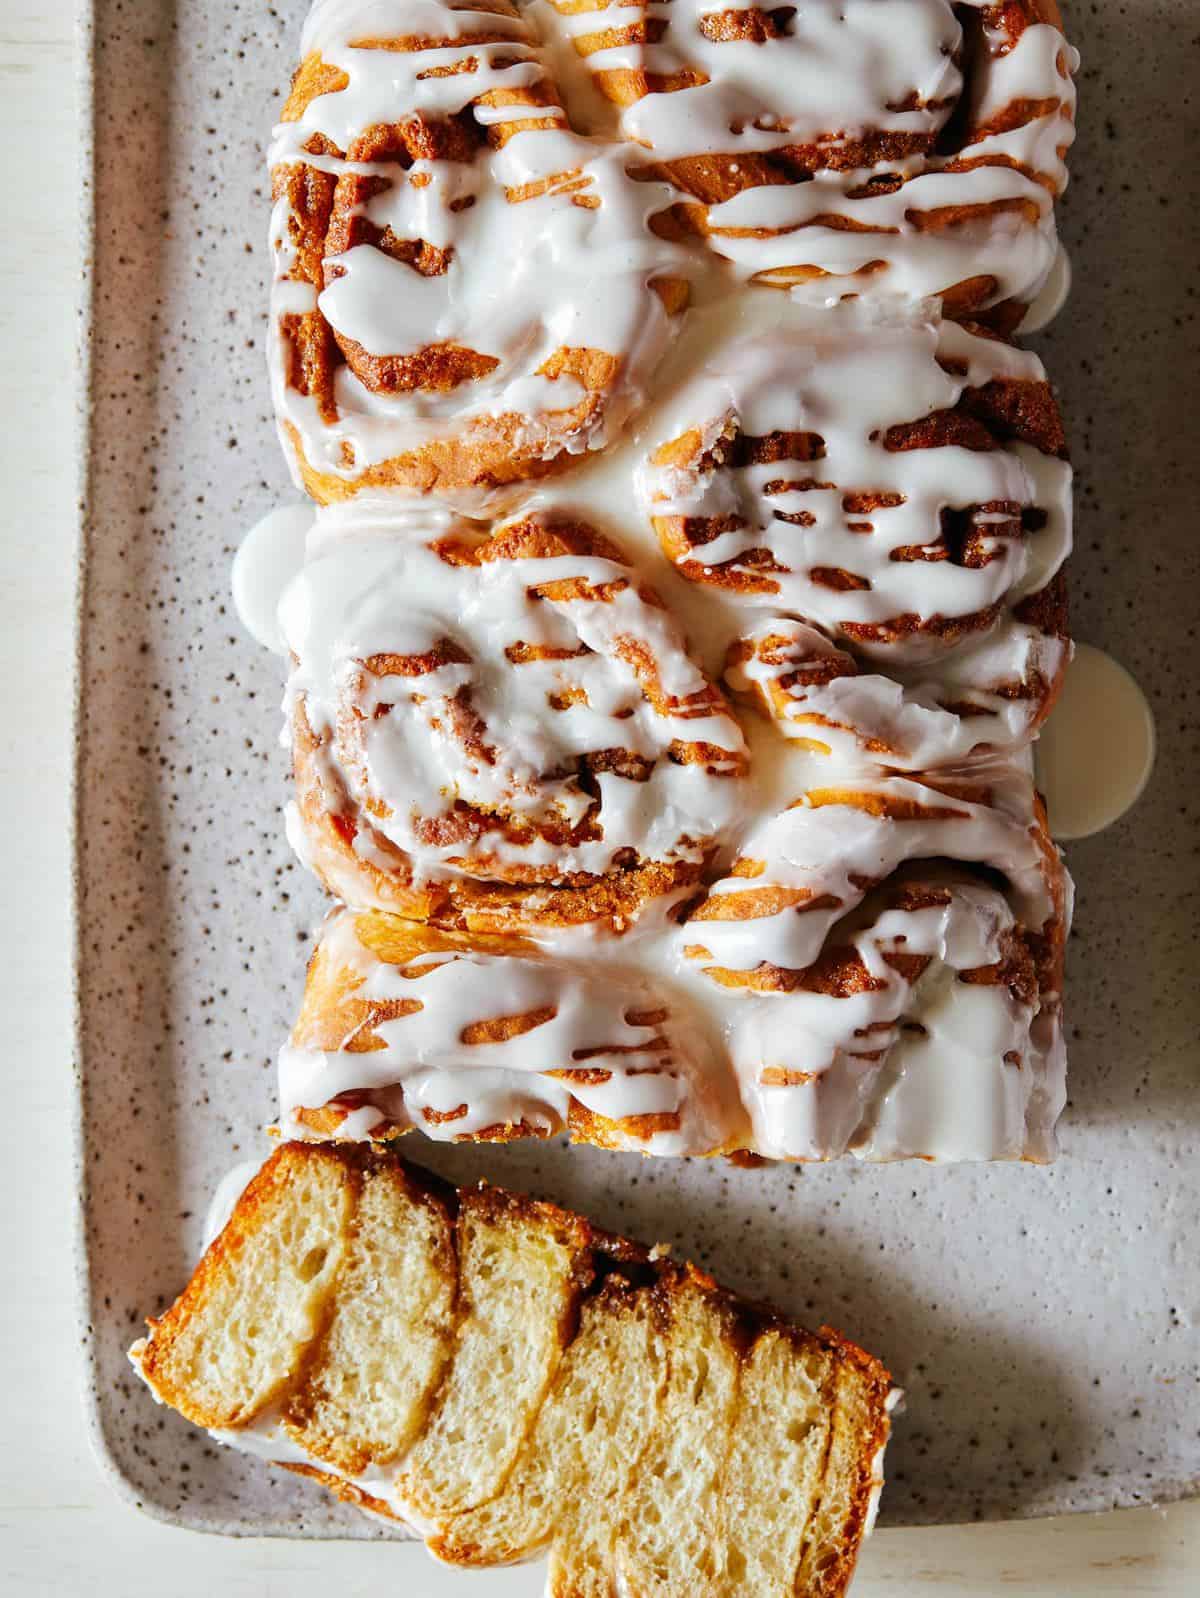 https://www.spoonforkbacon.com/wp-content/uploads/2019/05/recipe_cinnamon_roll_loaf.jpg